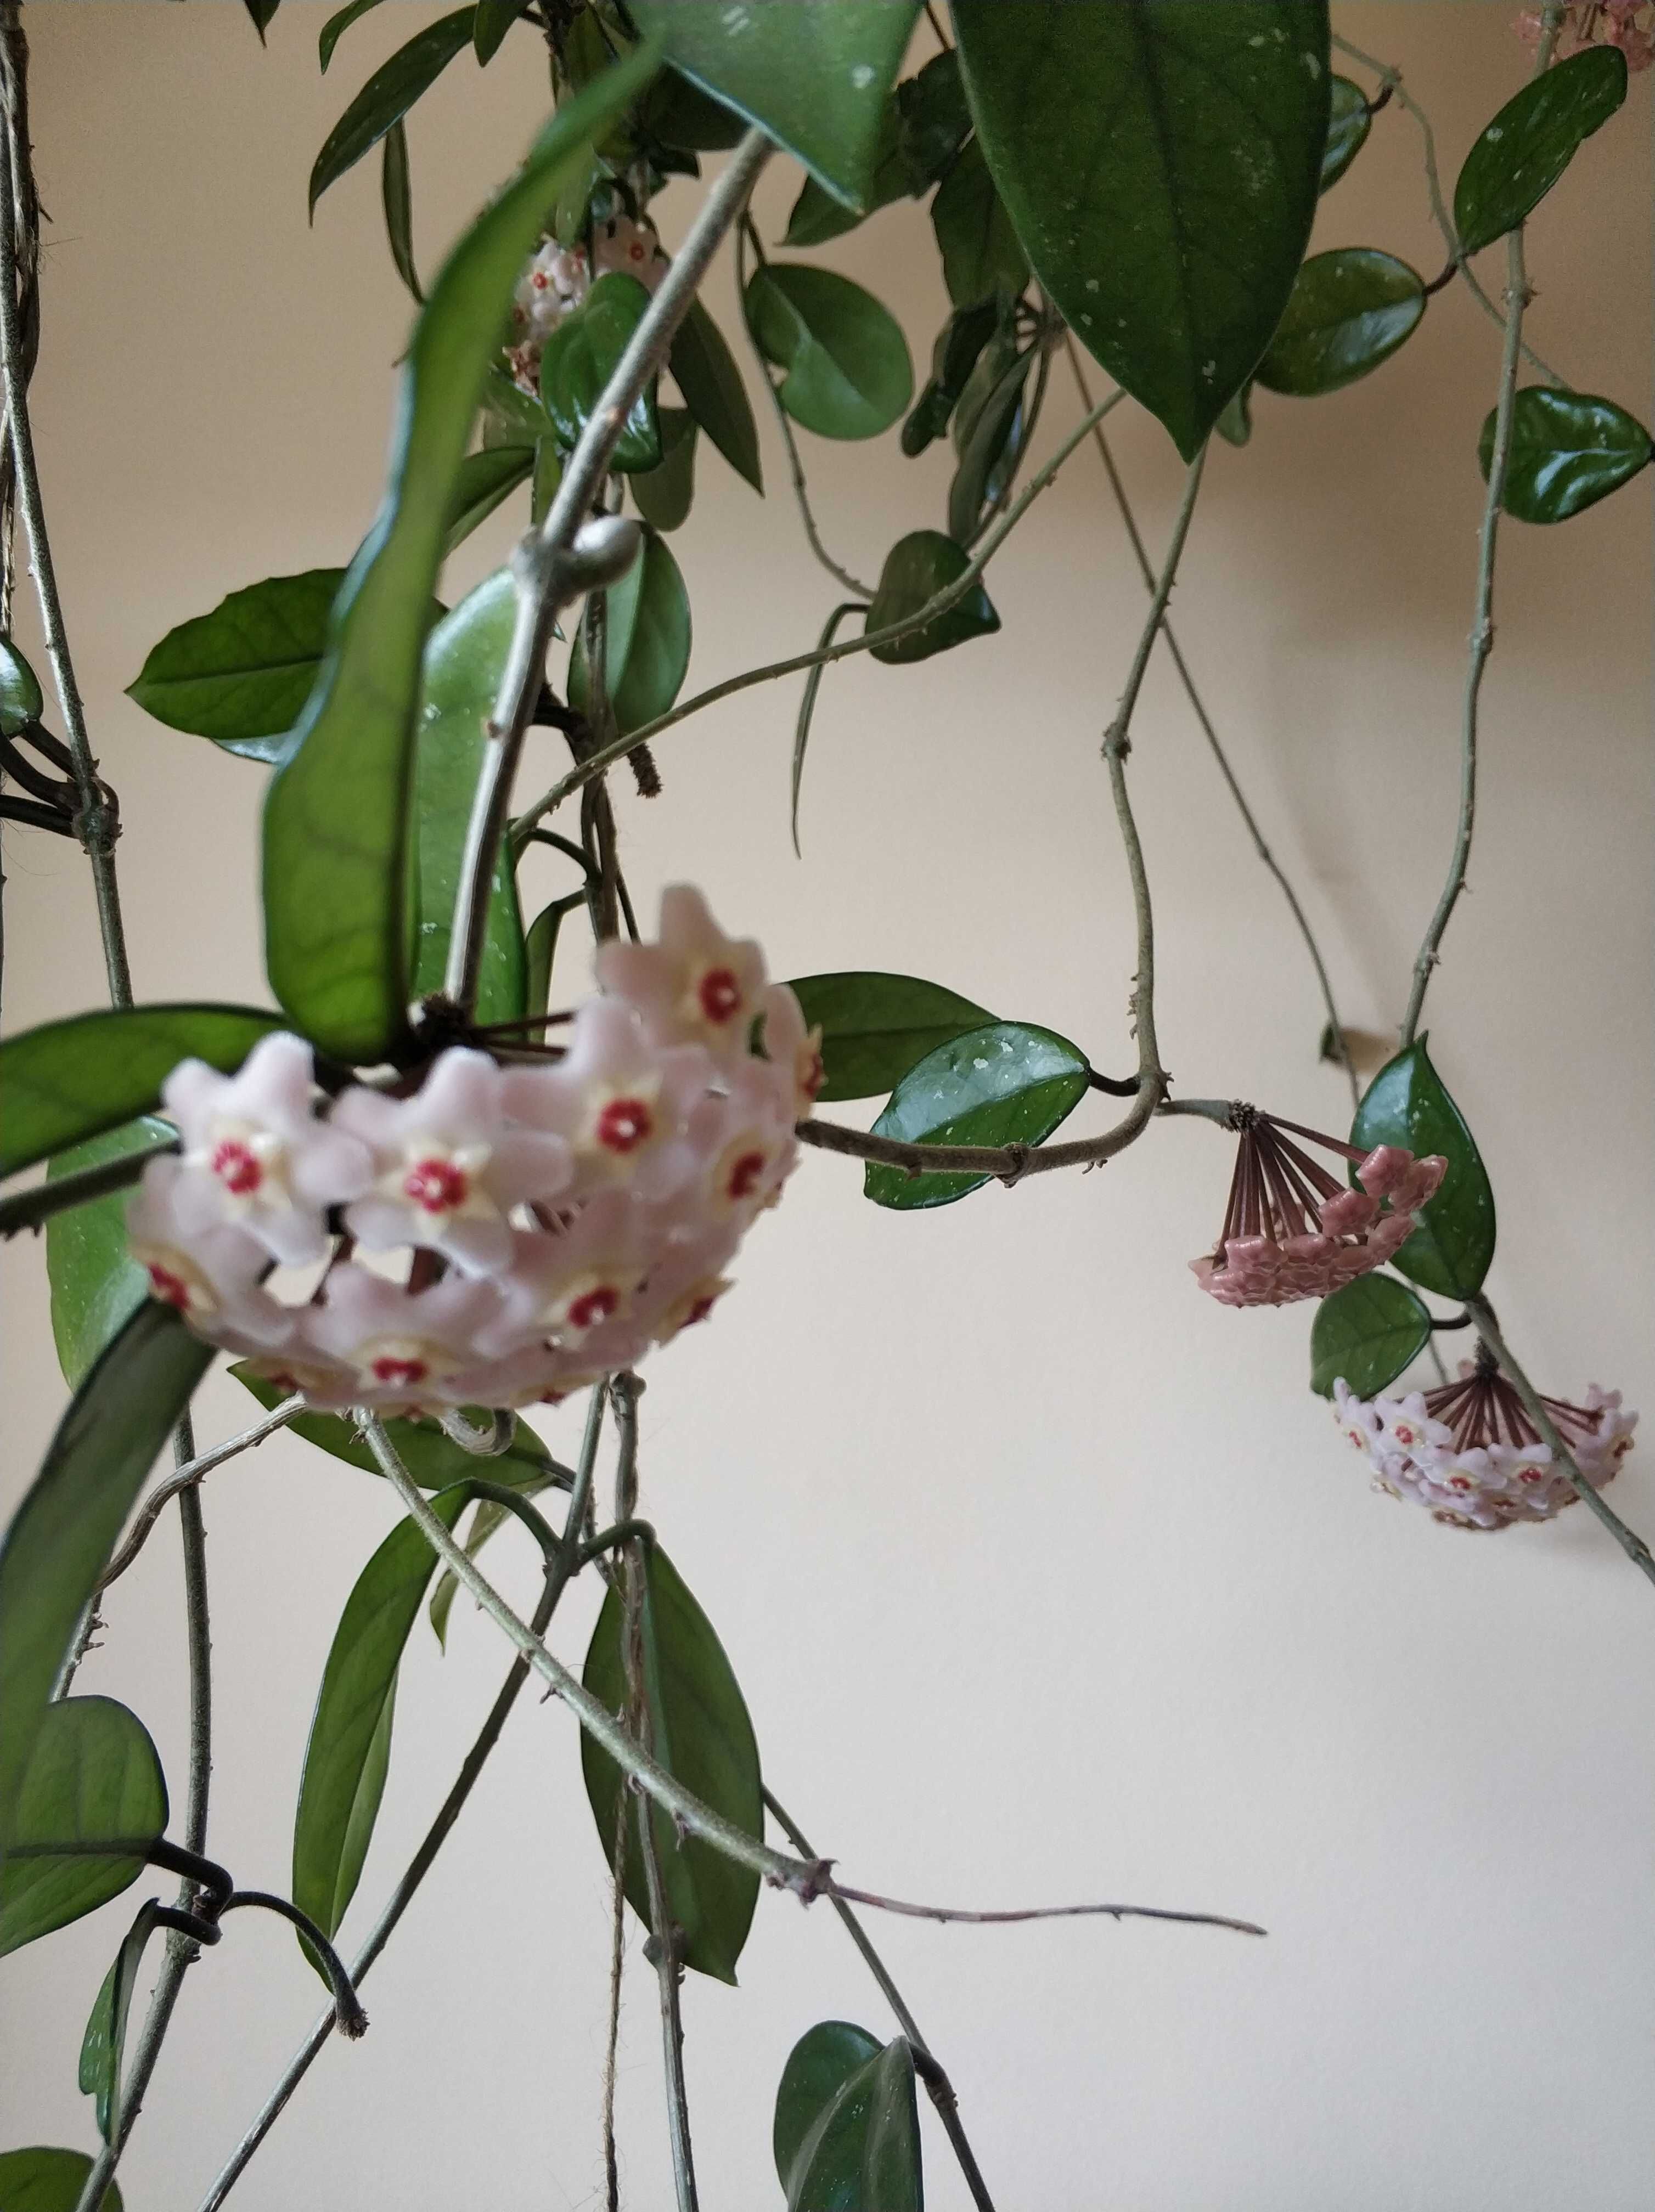 Hoya różowa roślina pokojowa